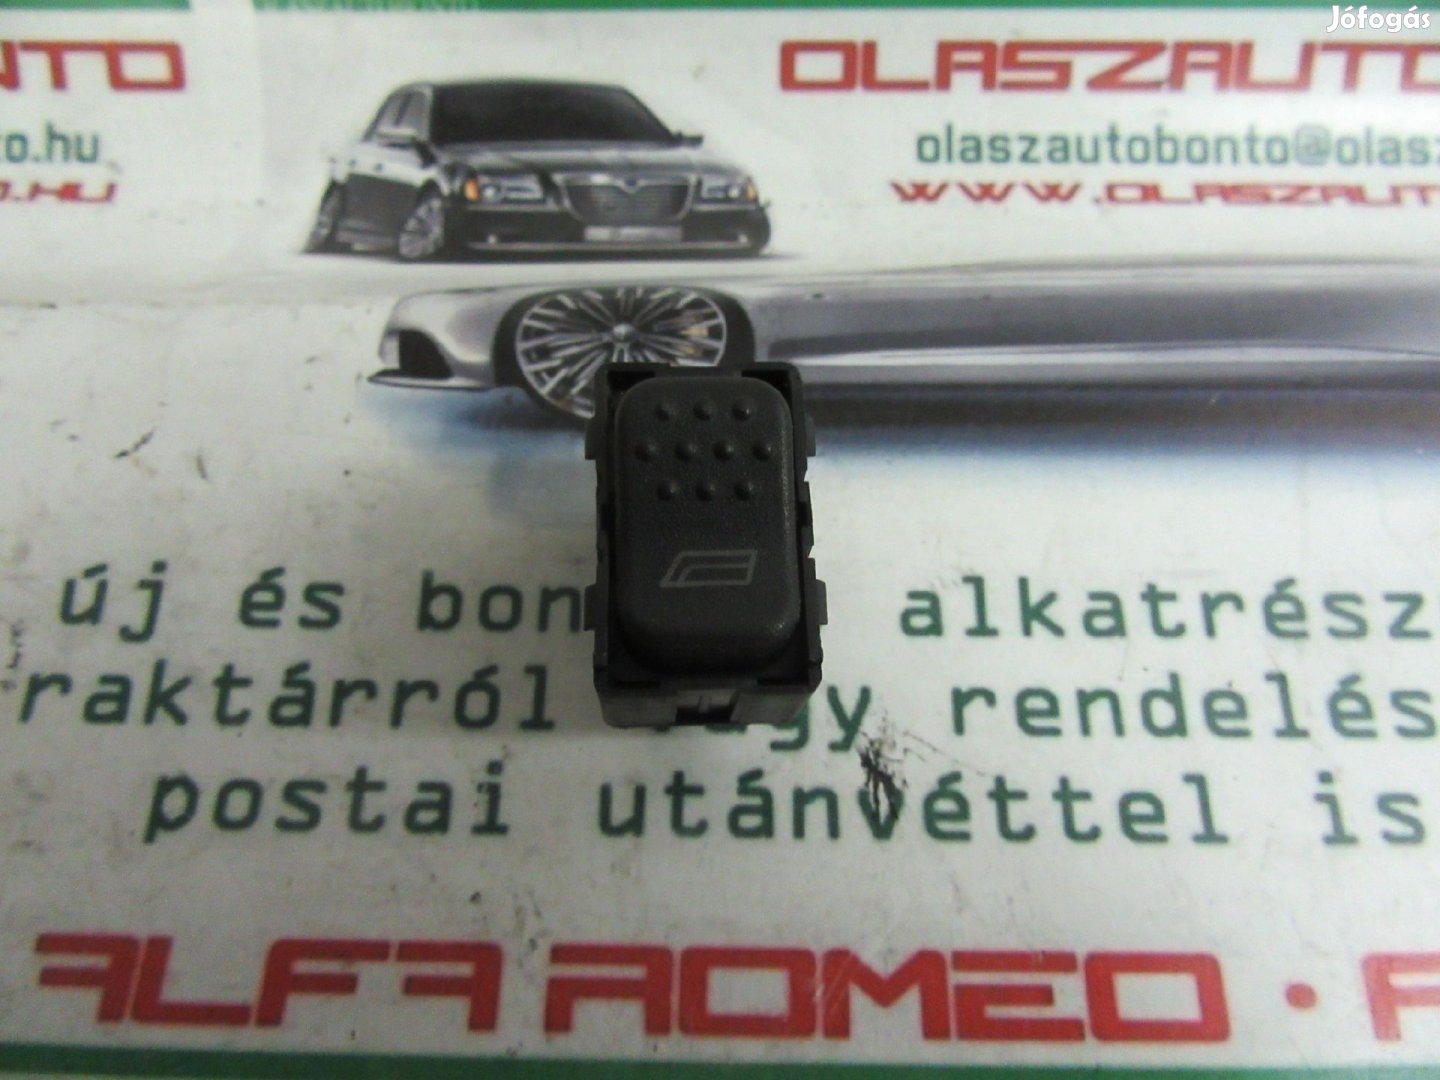 Alfa Romeo 145/146 60612495 számú bal első ablakemelő kapcsoló